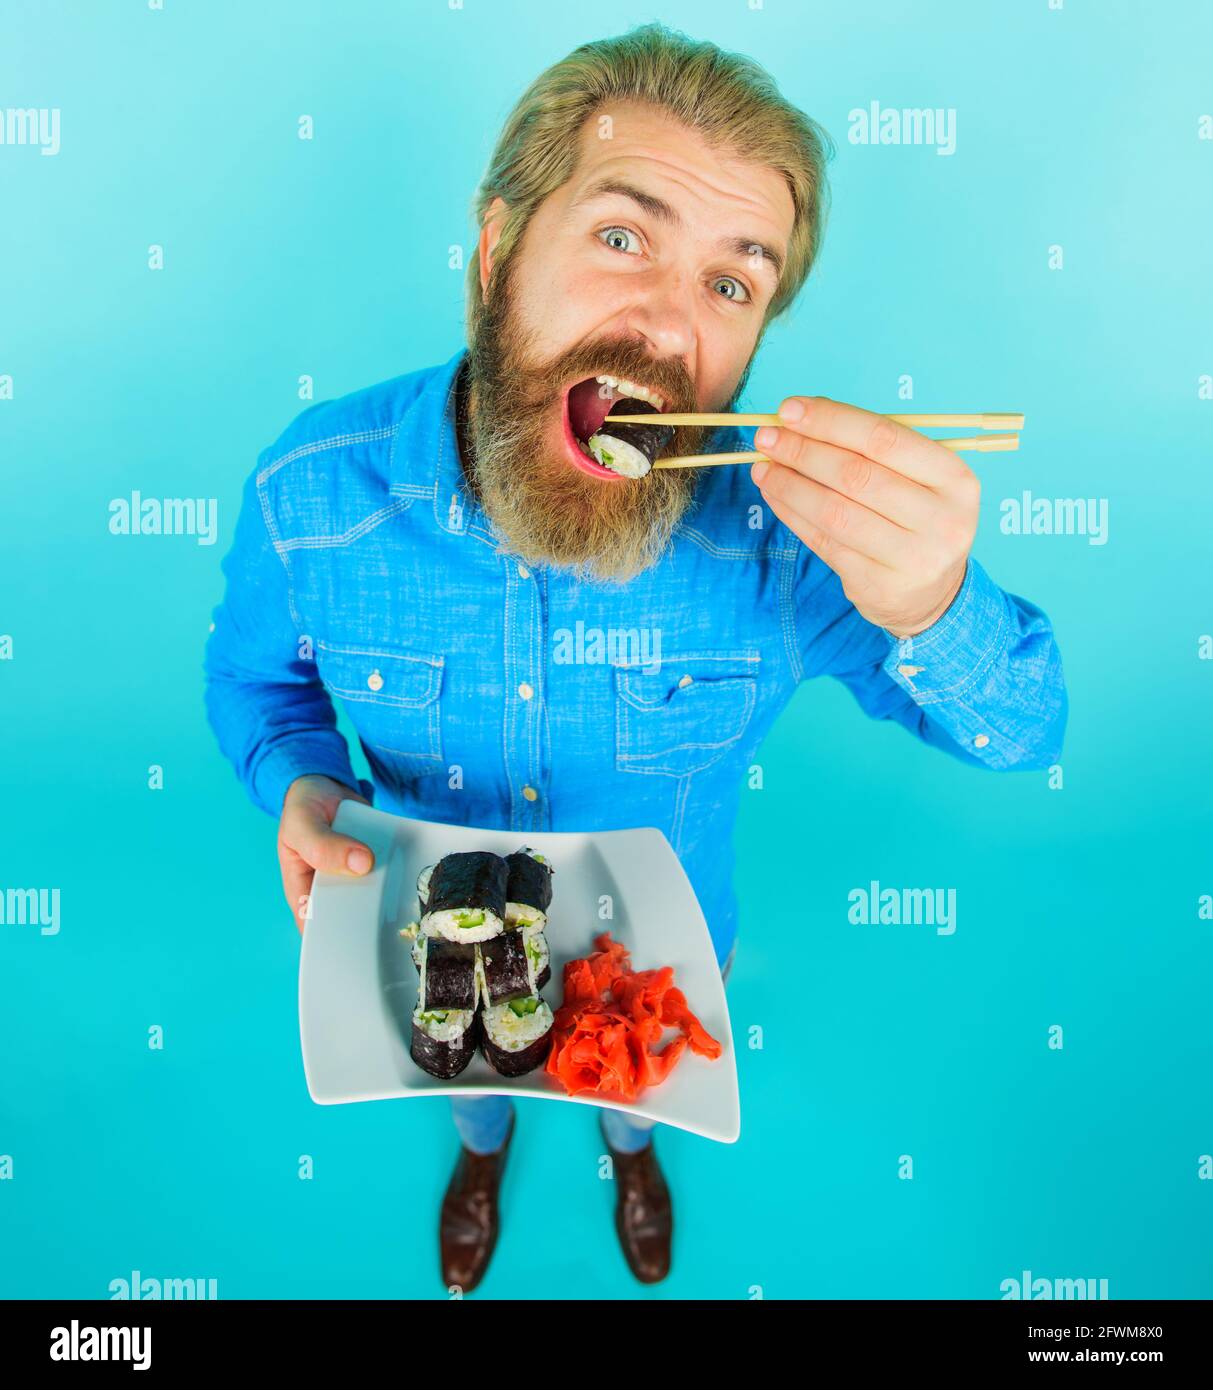 Bärtiger Mann mit einem Teller Sushi-Rolle und eingelegtem Ingwer. Mann, der Sushi isst. Japanisches Essen. Meeresfrüchte. Stockfoto